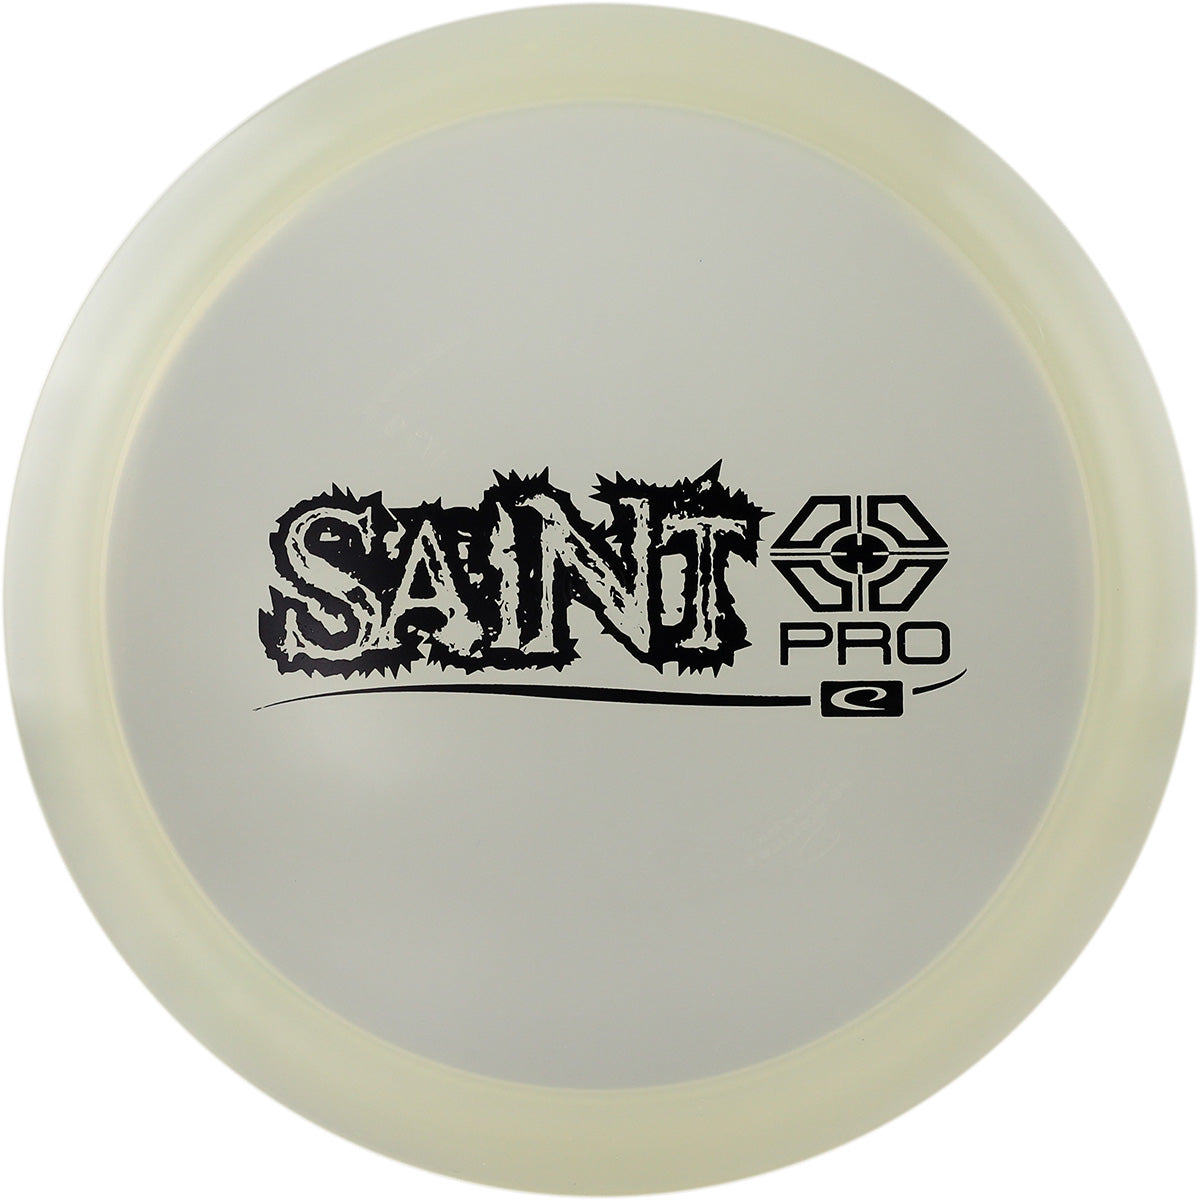 Opto Saint Pro (6942724915265)